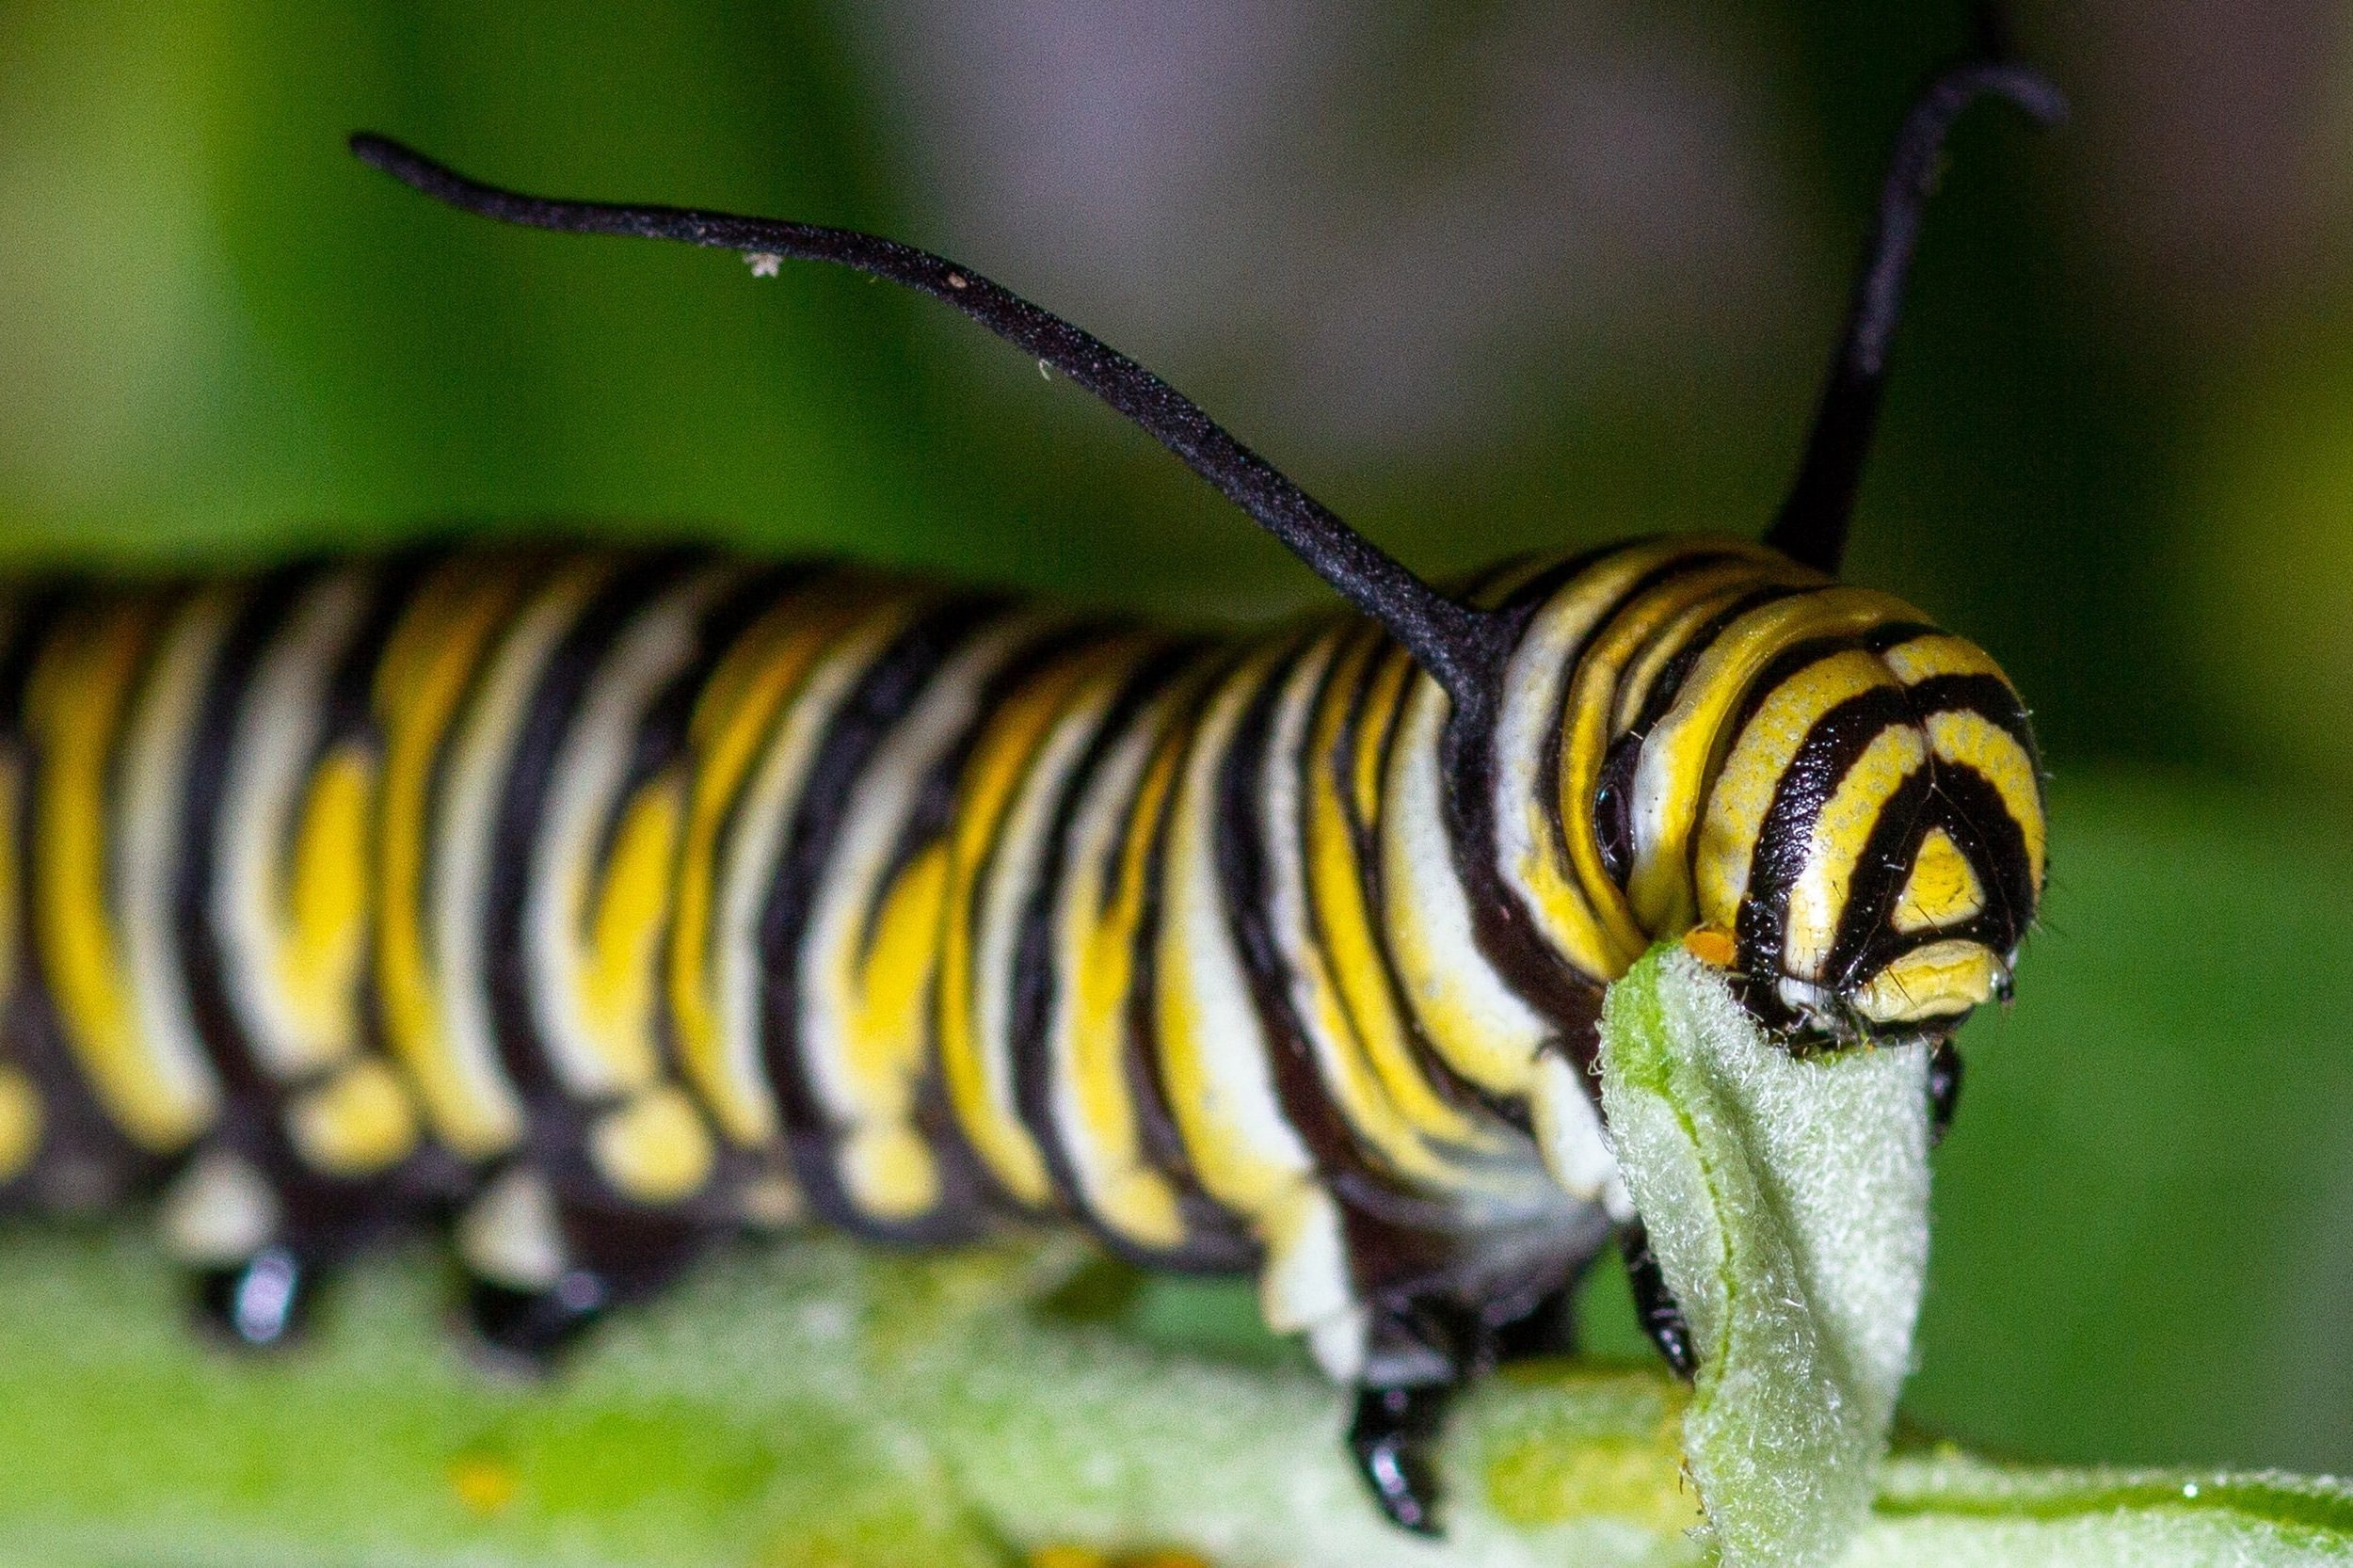 Monarch Caterpillar Munching Milkweed